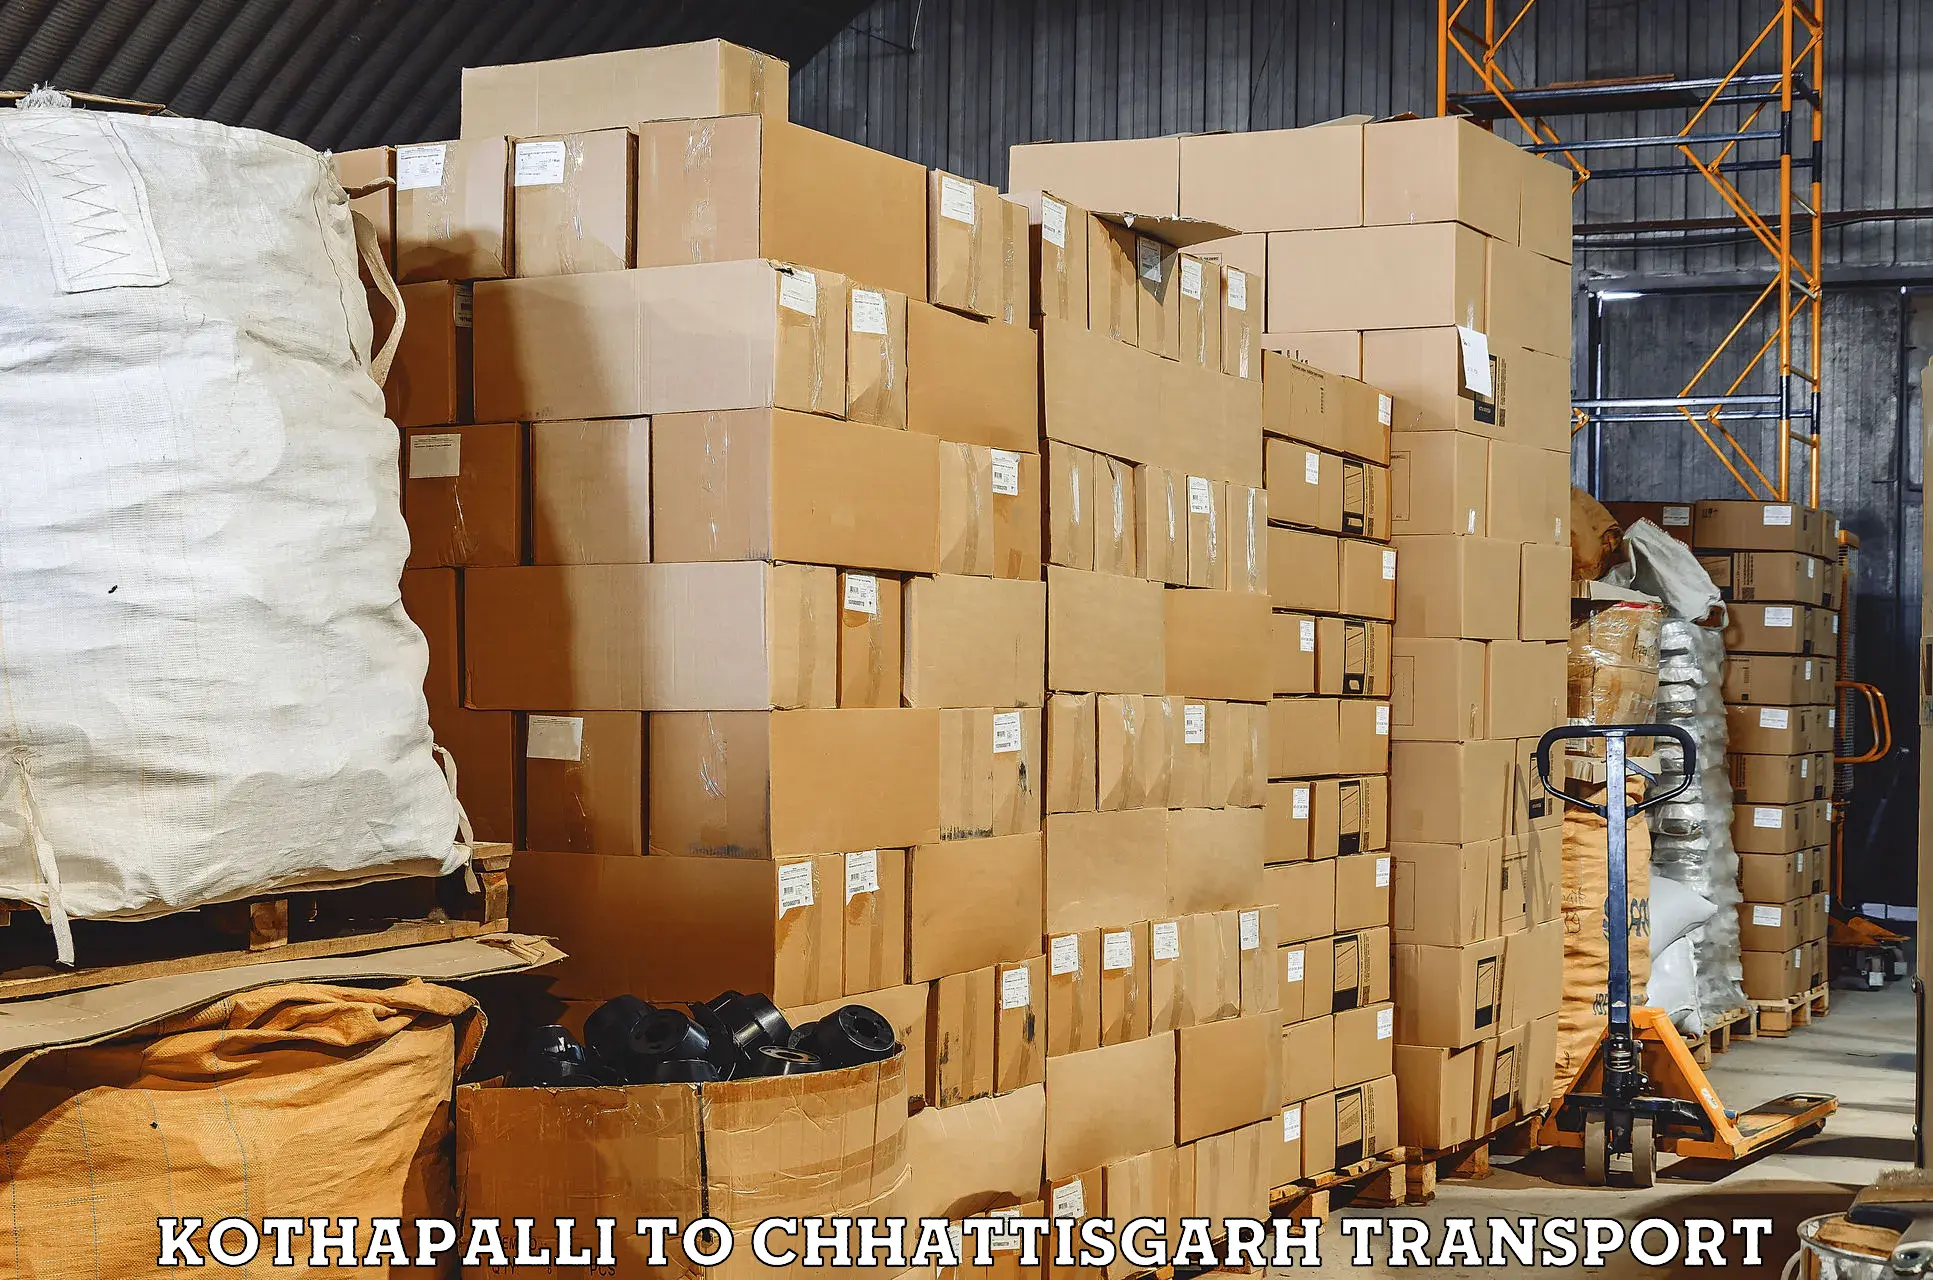 Shipping partner Kothapalli to Kawardha